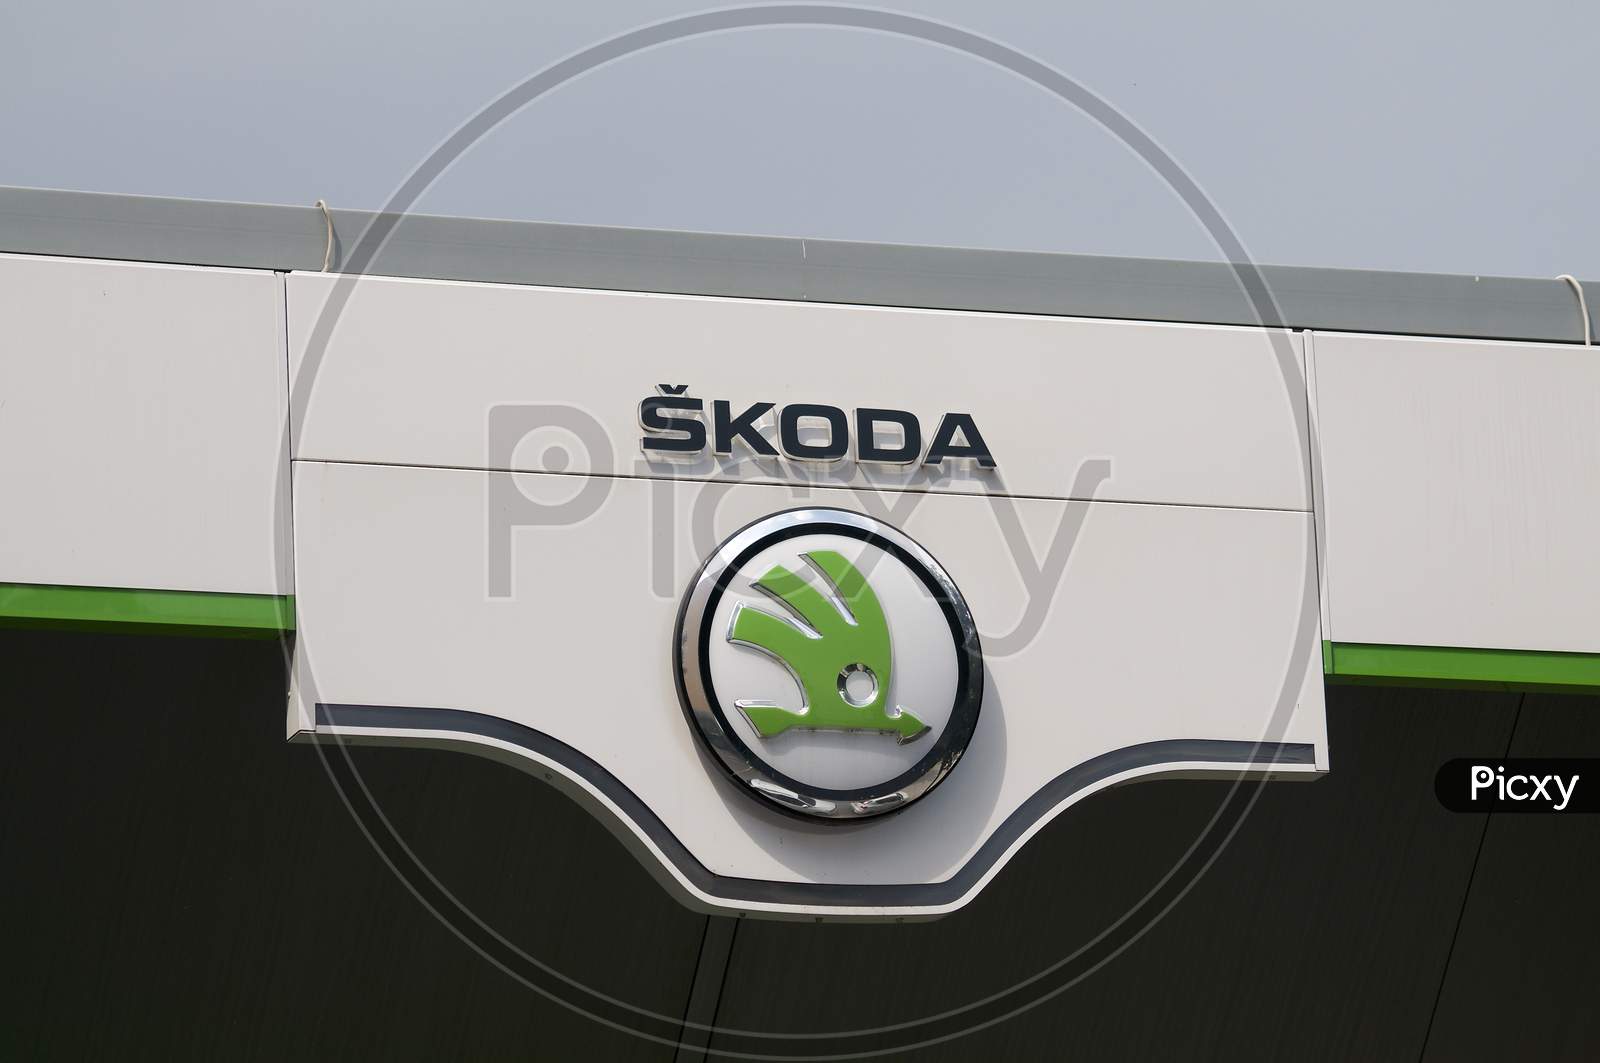 Škoda Dealership Logo Hanging In Lugano